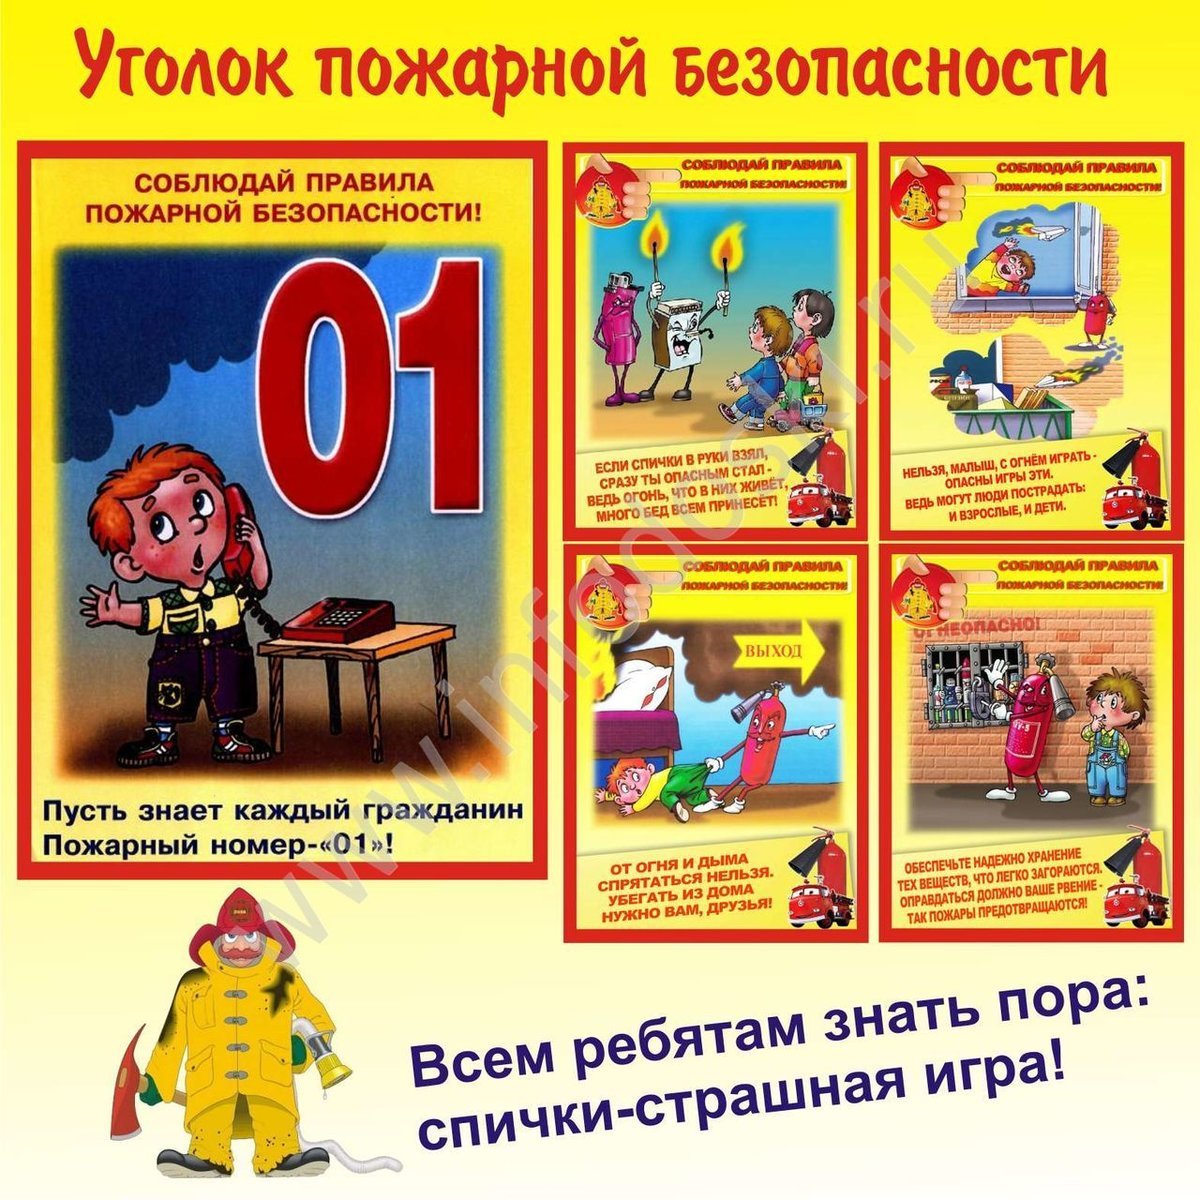 Картинки правила безопасности при пожаре